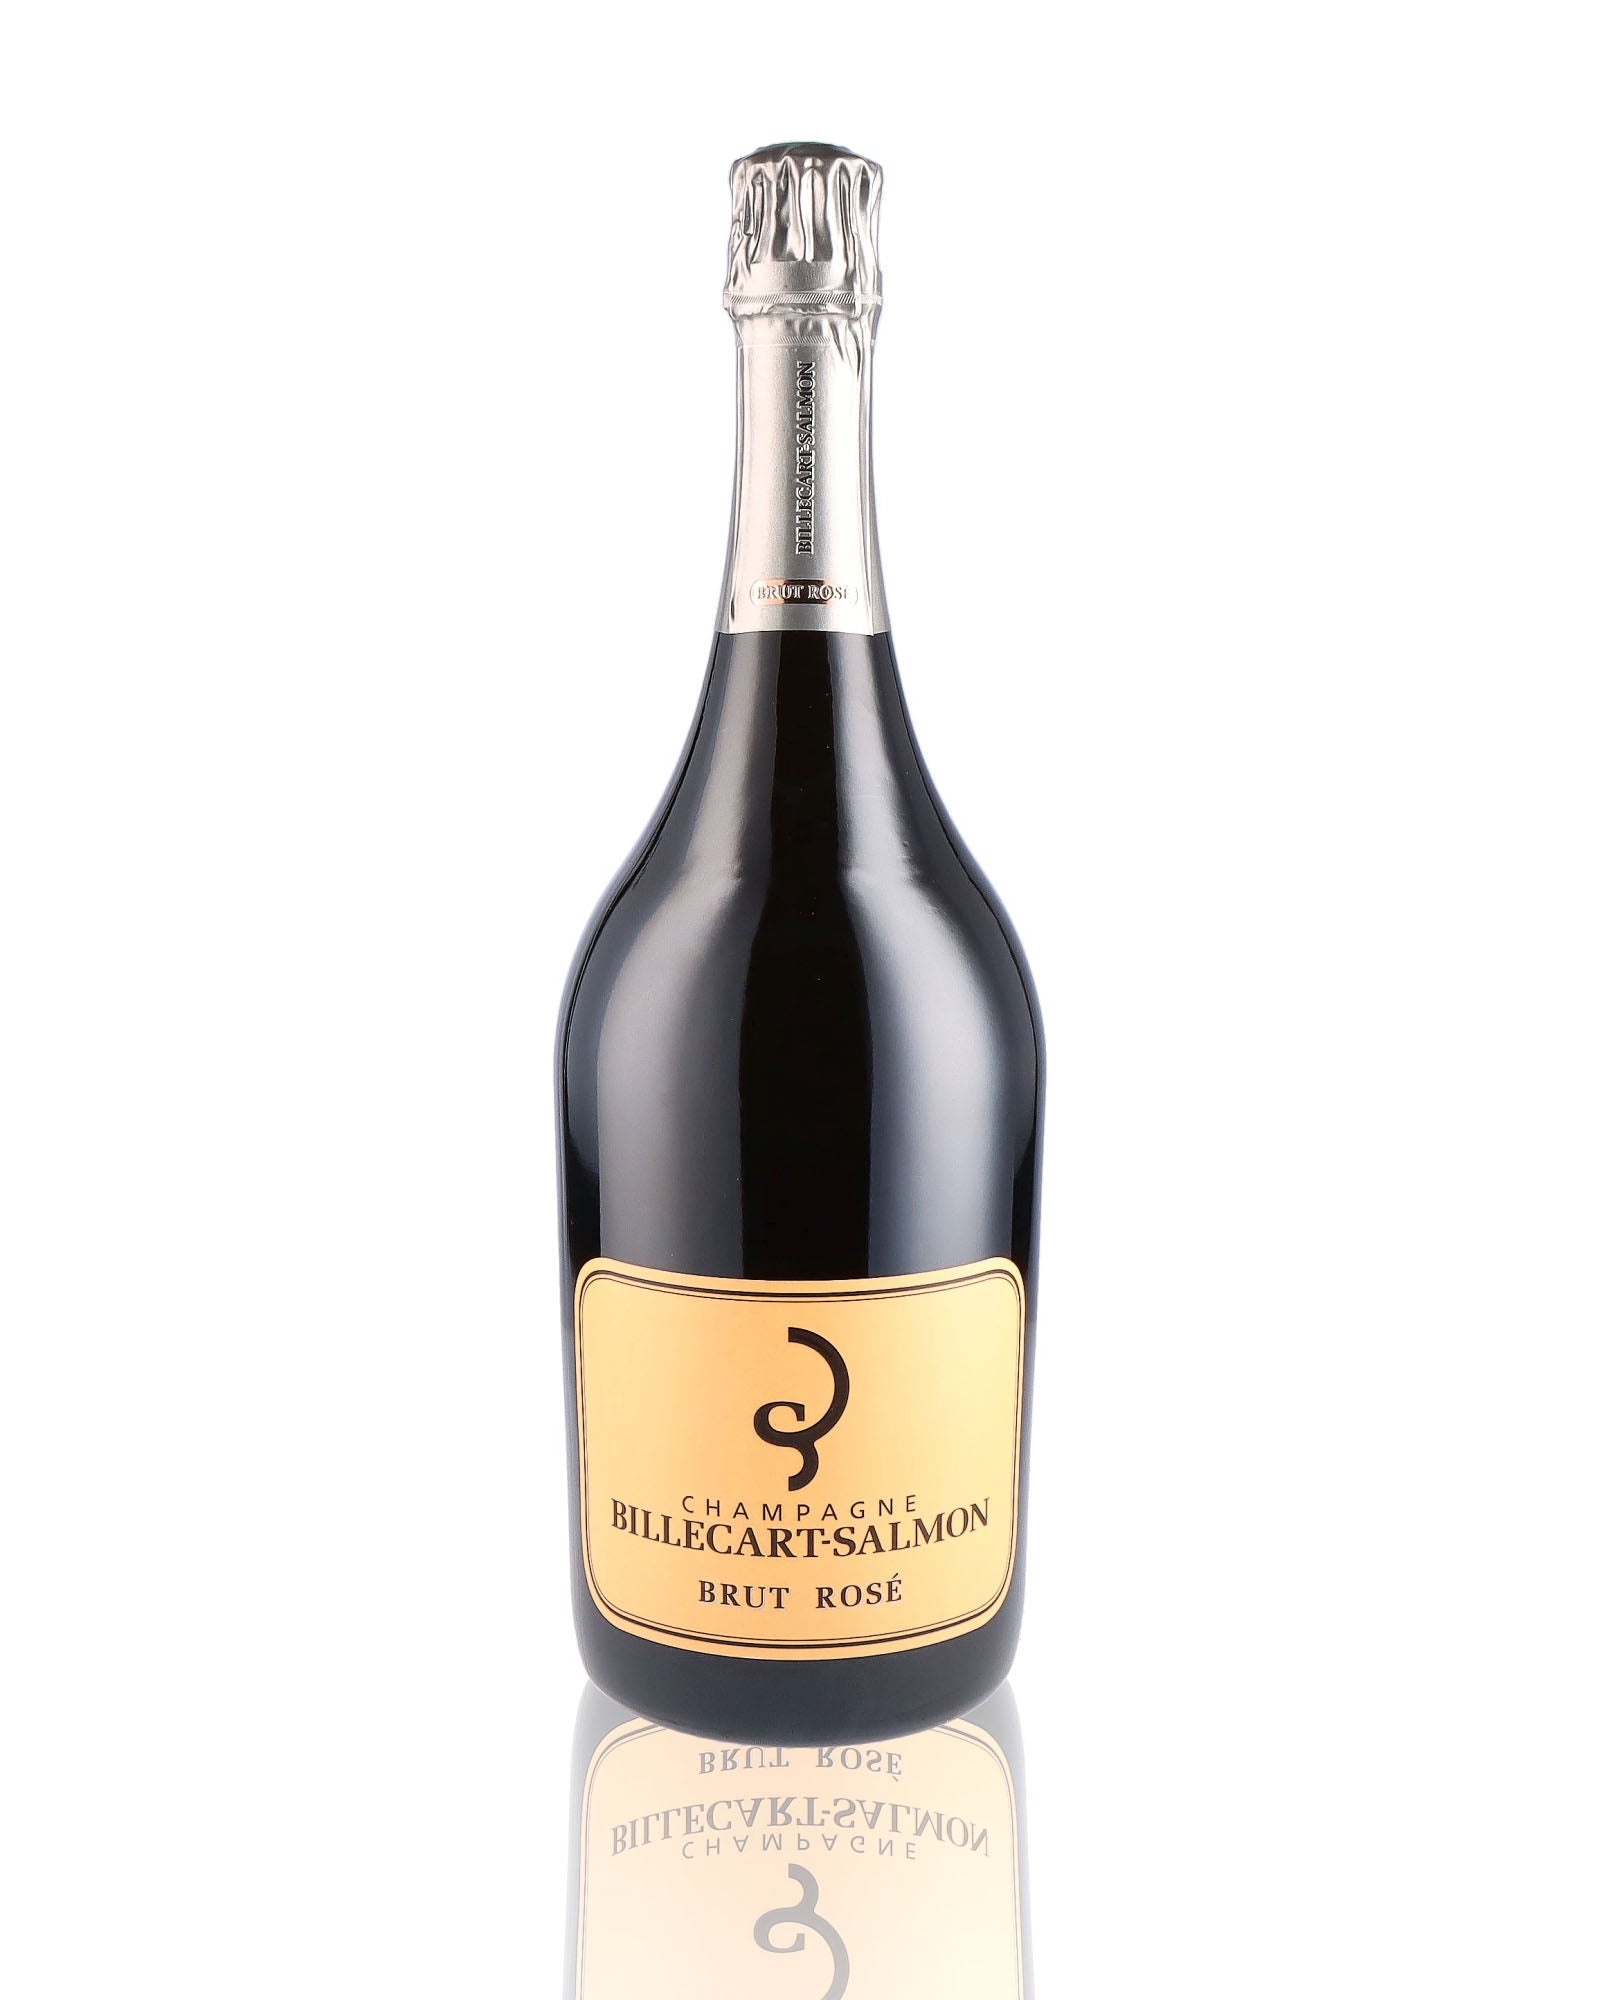 Une bouteille de champagne de la marque Billecart Salmon, de type rosé, en version magnum.